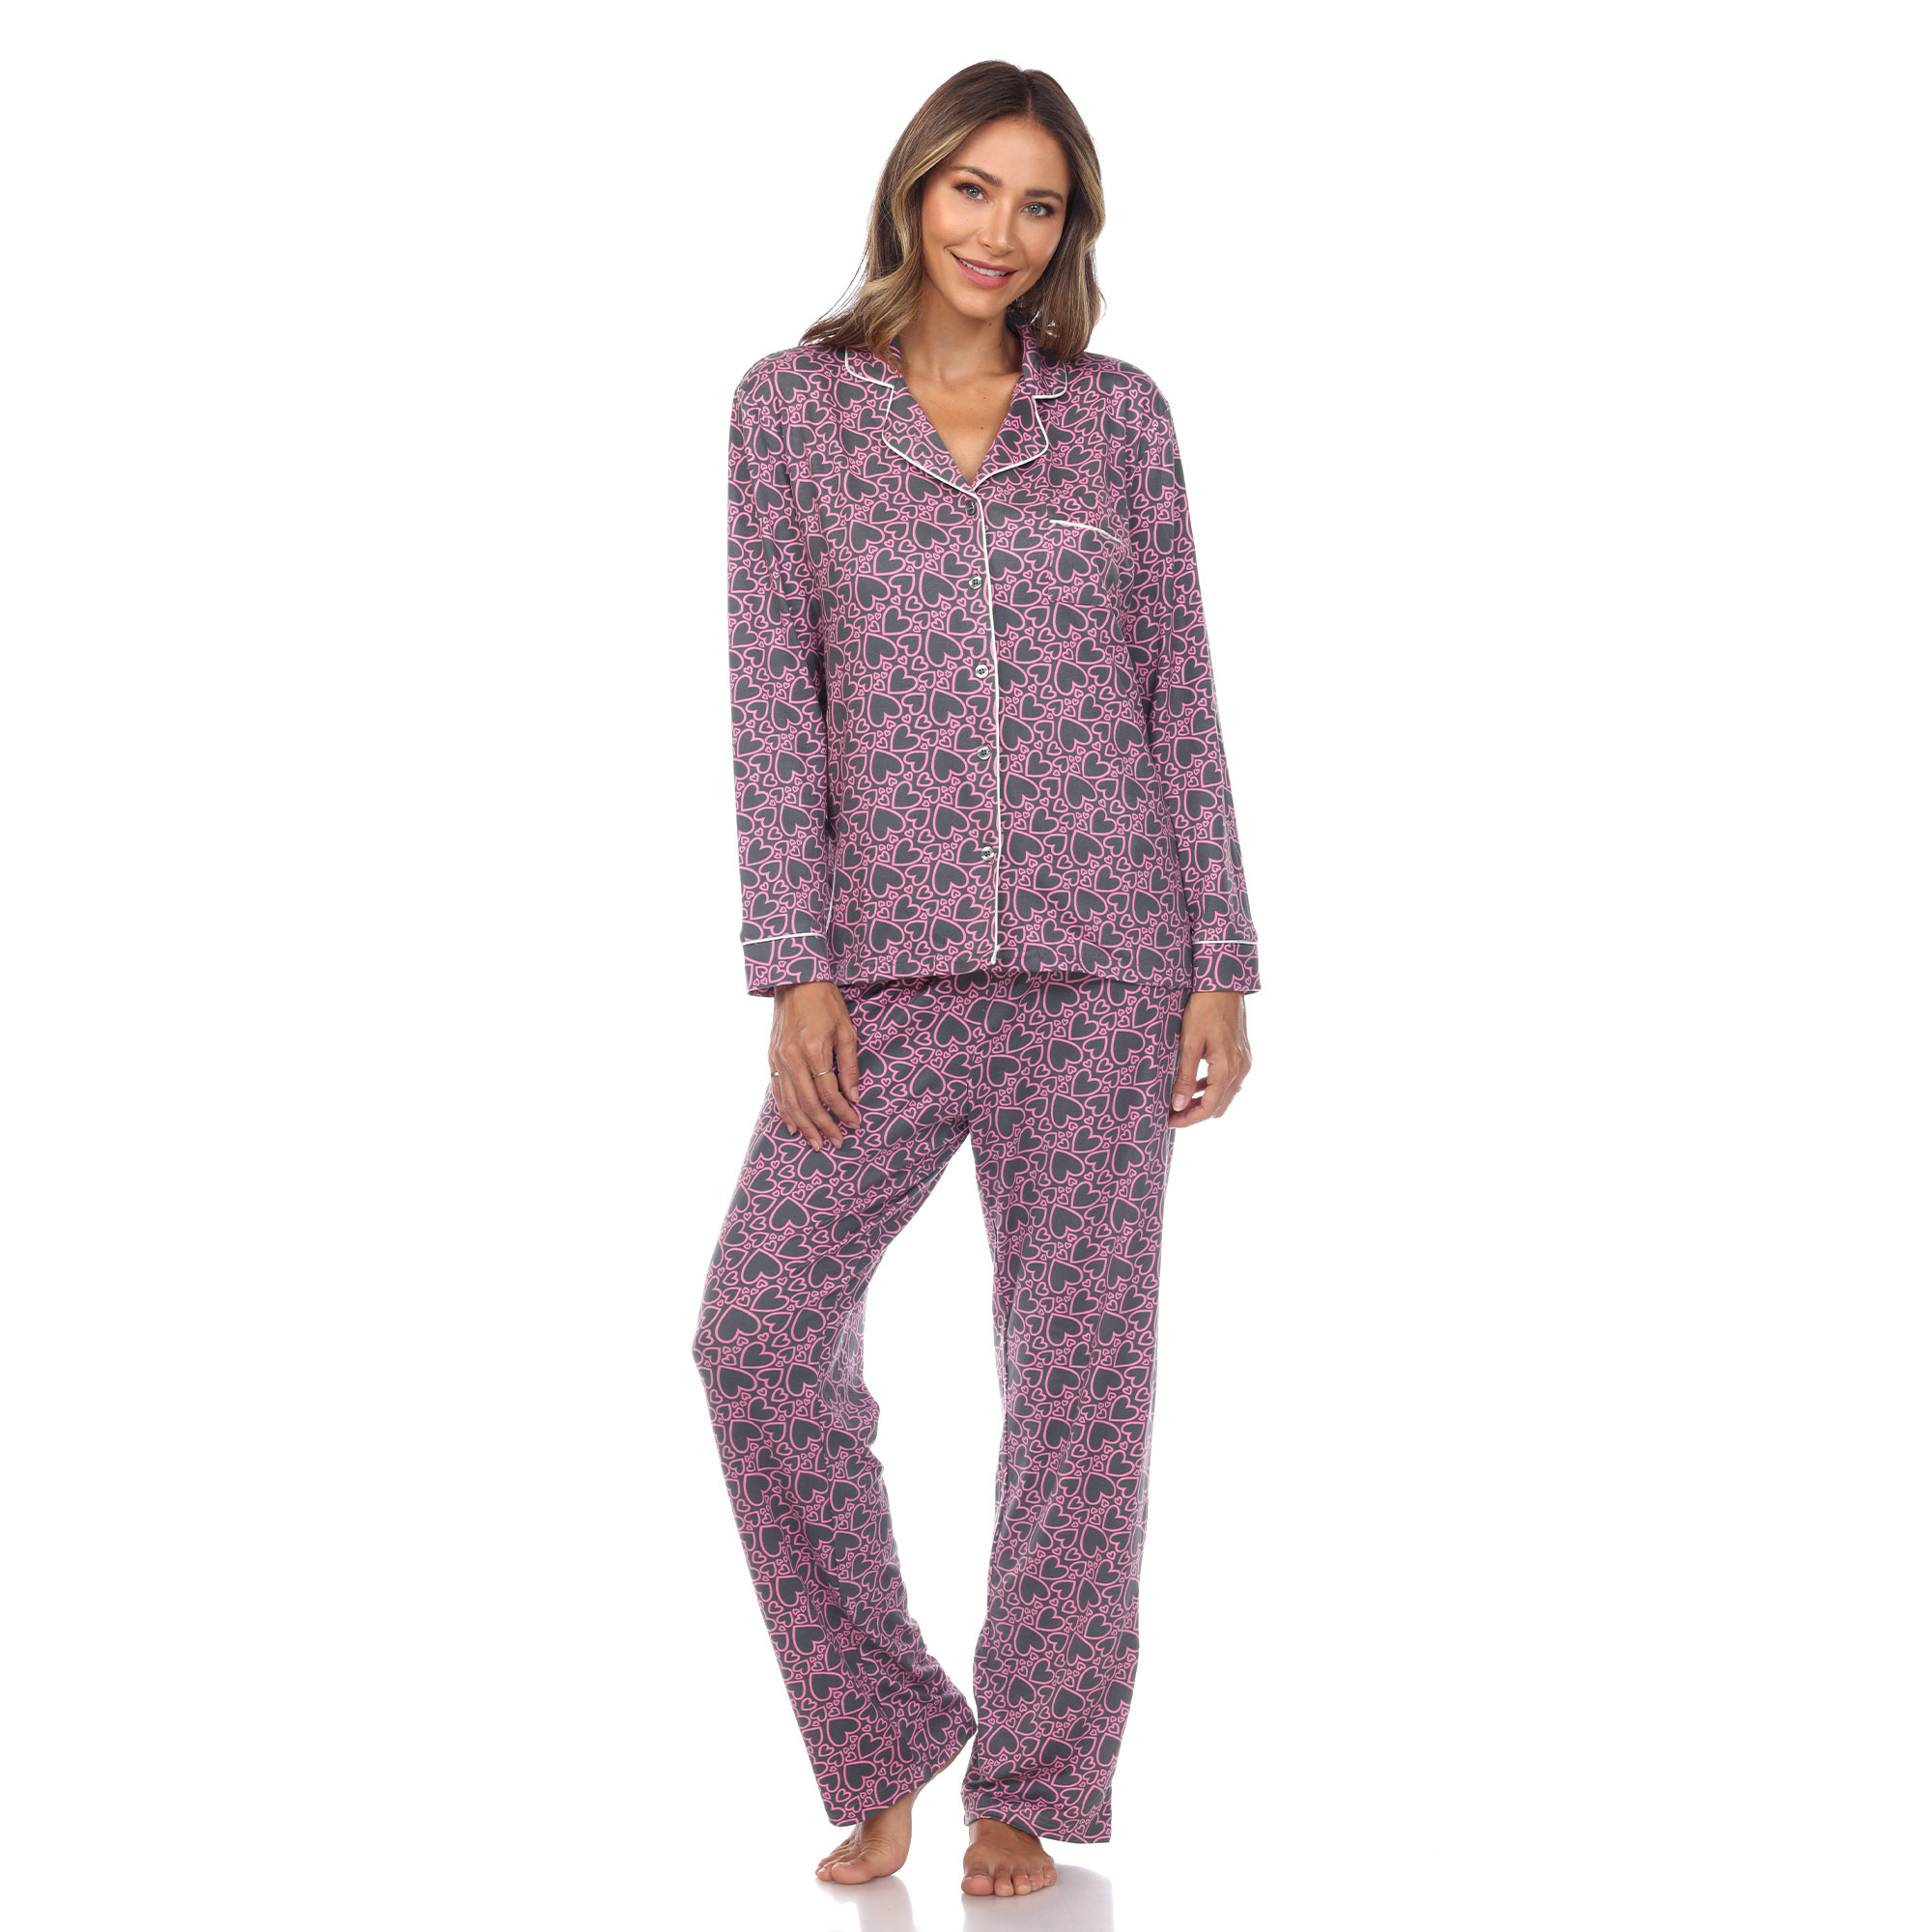 White Mark Women's Long Sleeve Hearts Pajama Set - Gray, Medium